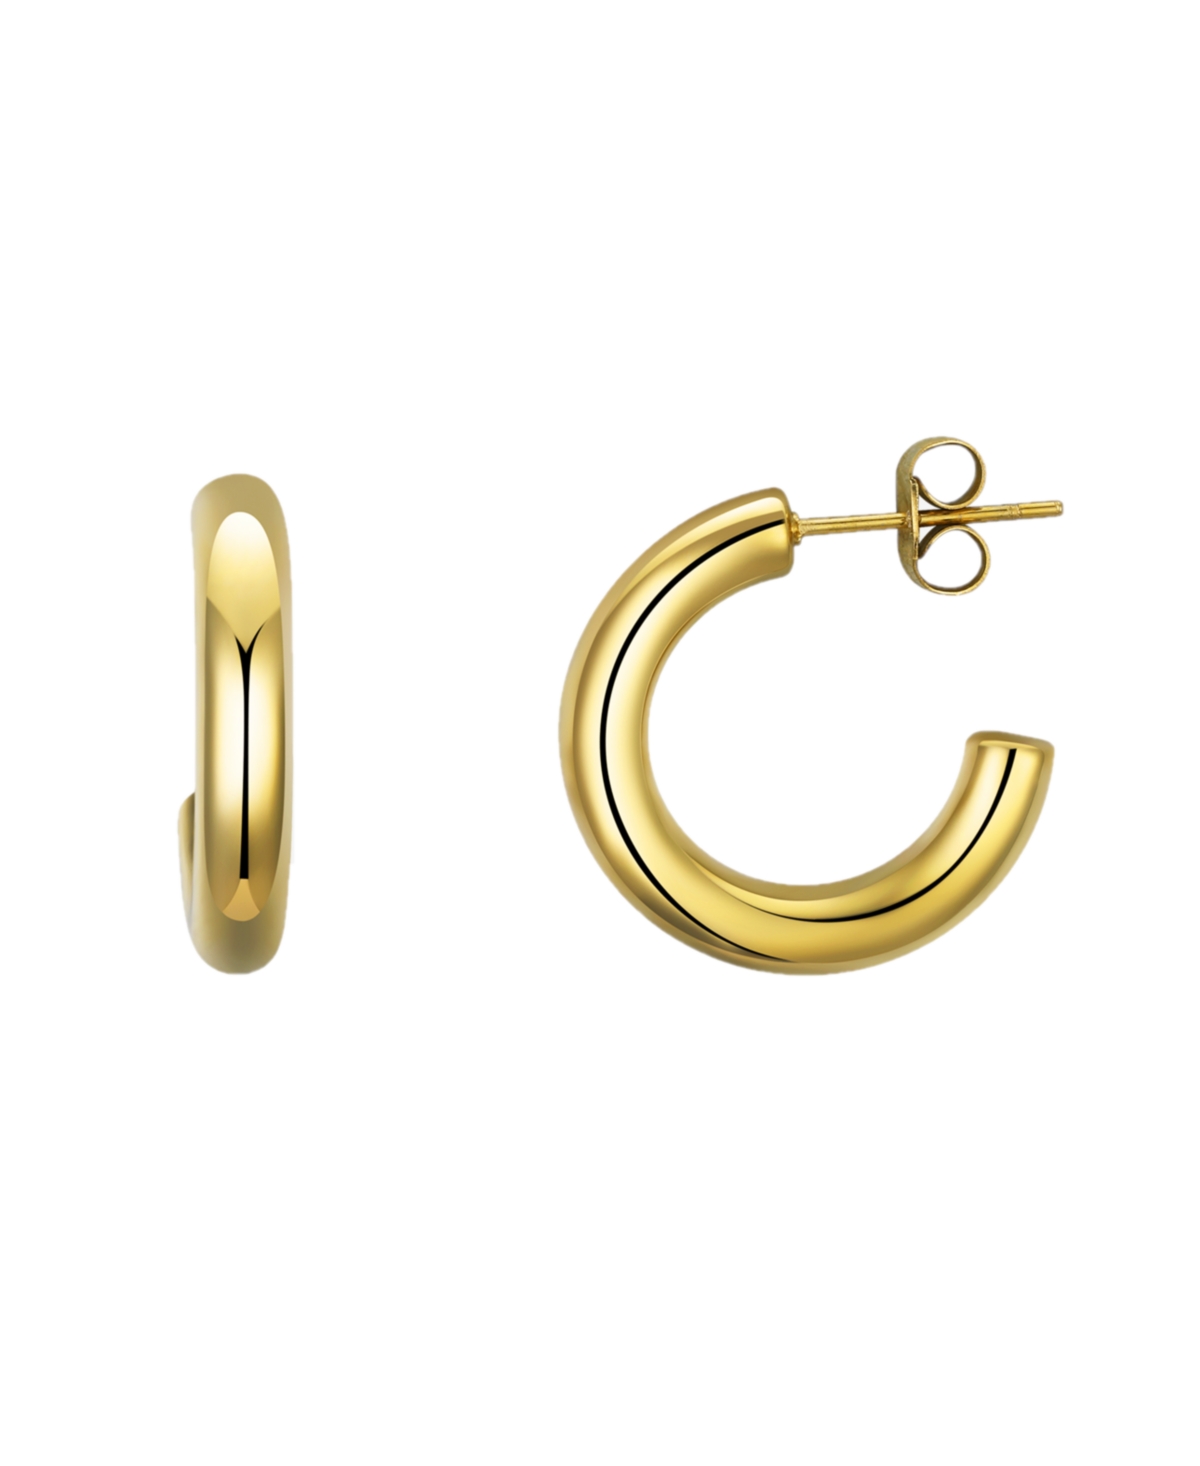 Gold-Tone Stainless Steel Hoop Earrings - Gold